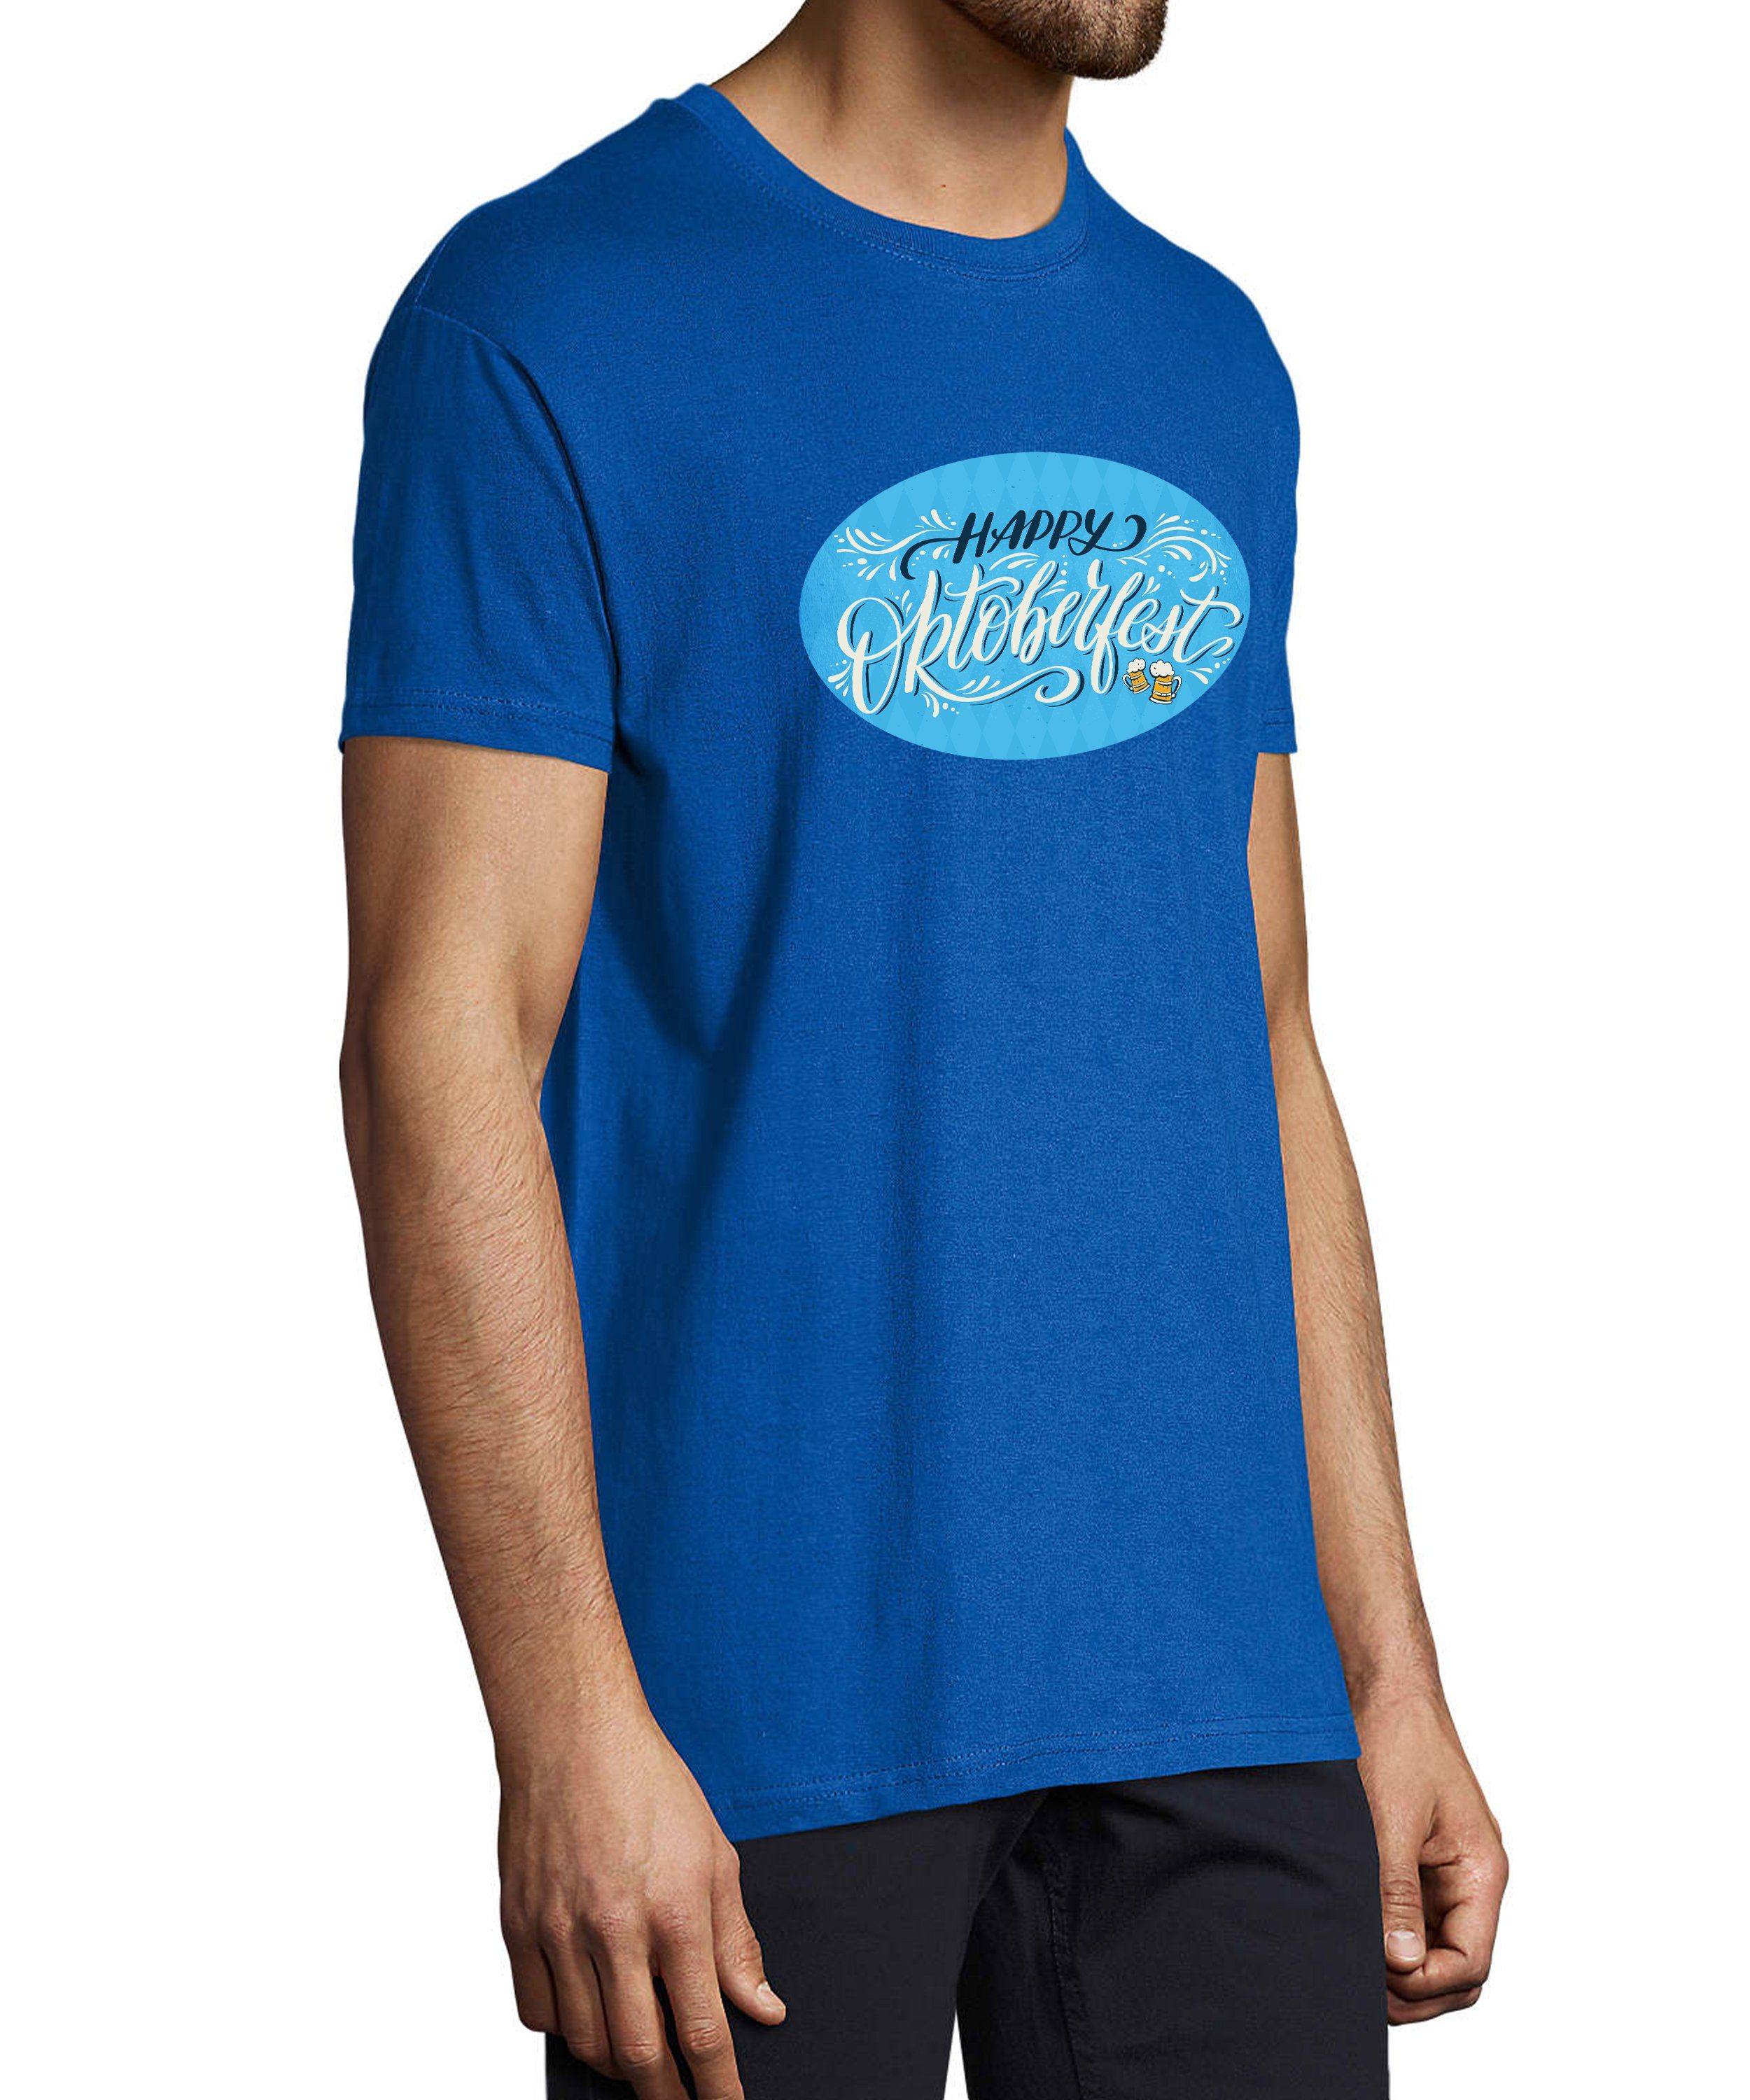 MyDesign24 T-Shirt Baumwollshirt royal T-Shirt - blau Fit, Aufdruck Shirt Party Oktoberfest mit Regular Herren i322 Trinkshirt